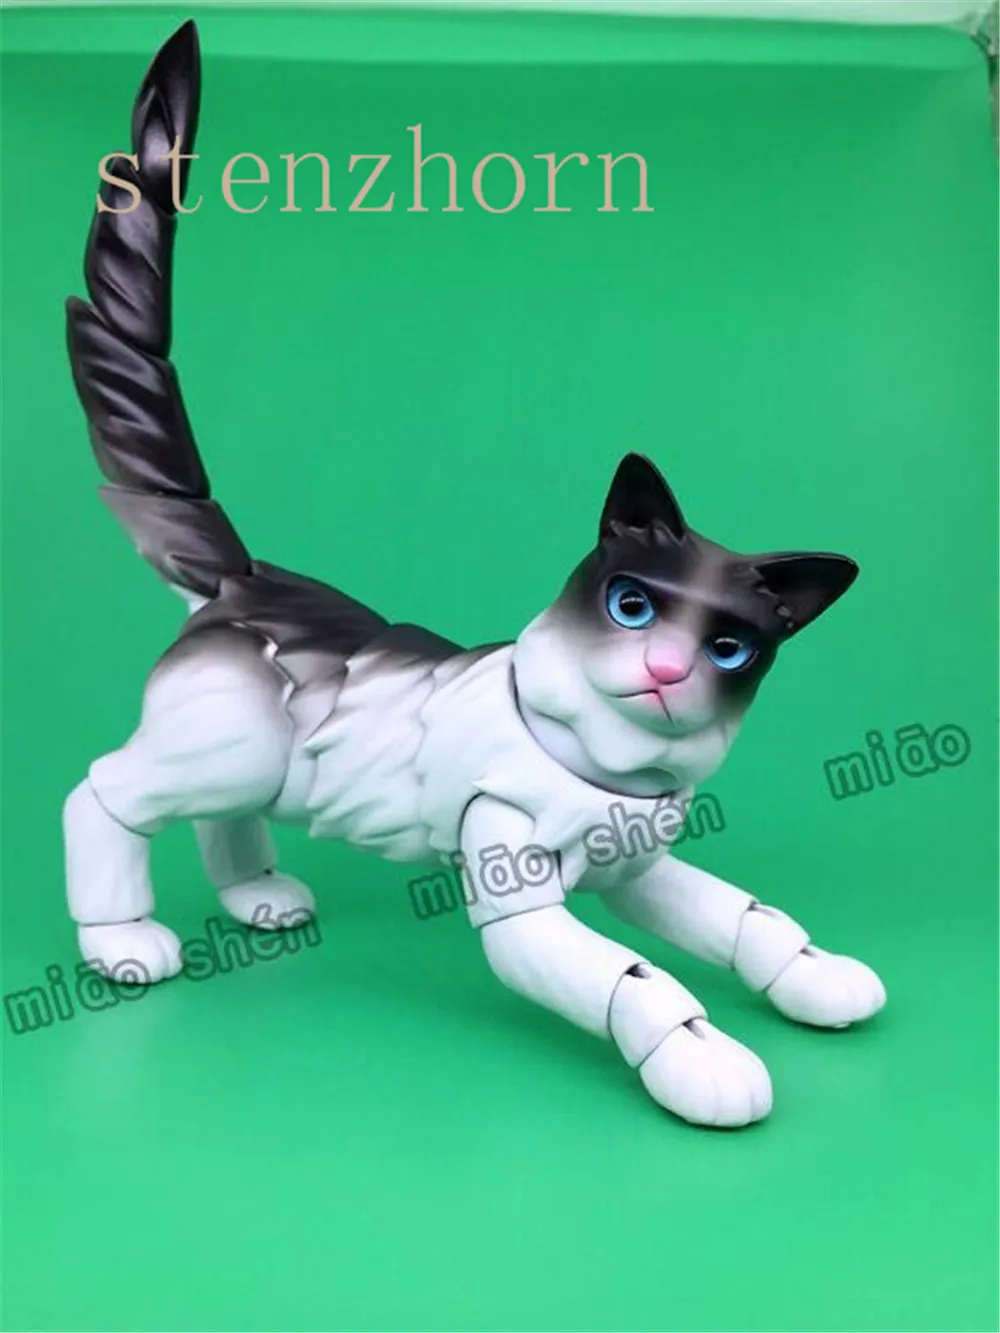 StenzhornFashion оригинальная bjddoll Топ кошка Высокое качество домашняя кукла бесплатные глаза